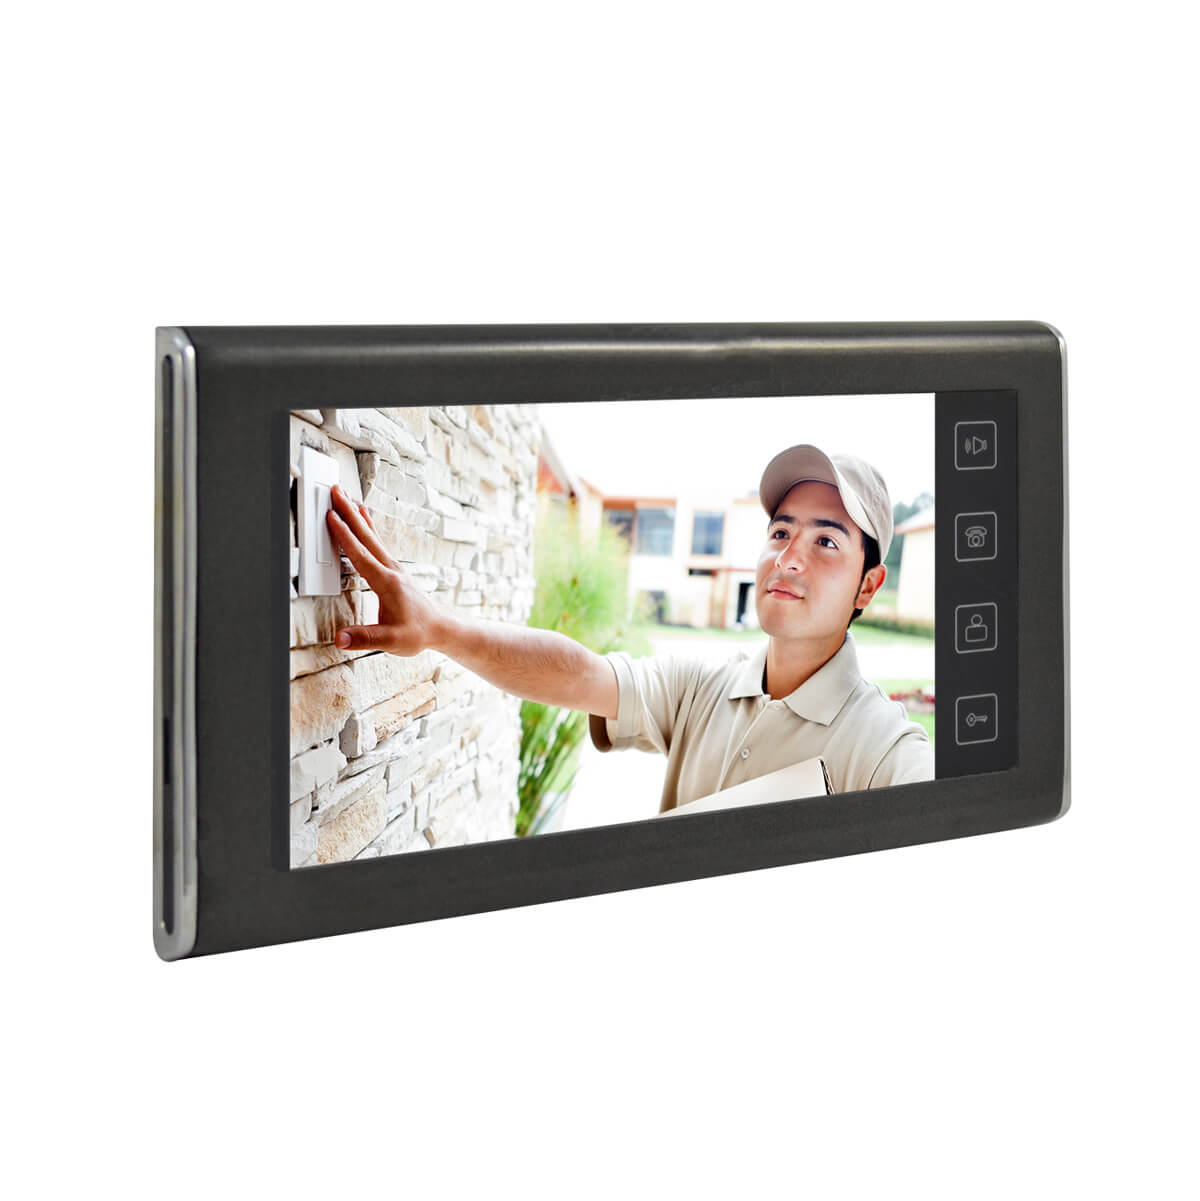 Video portero con pantalla LCD de 7 y camara con resolucion de 420TVL